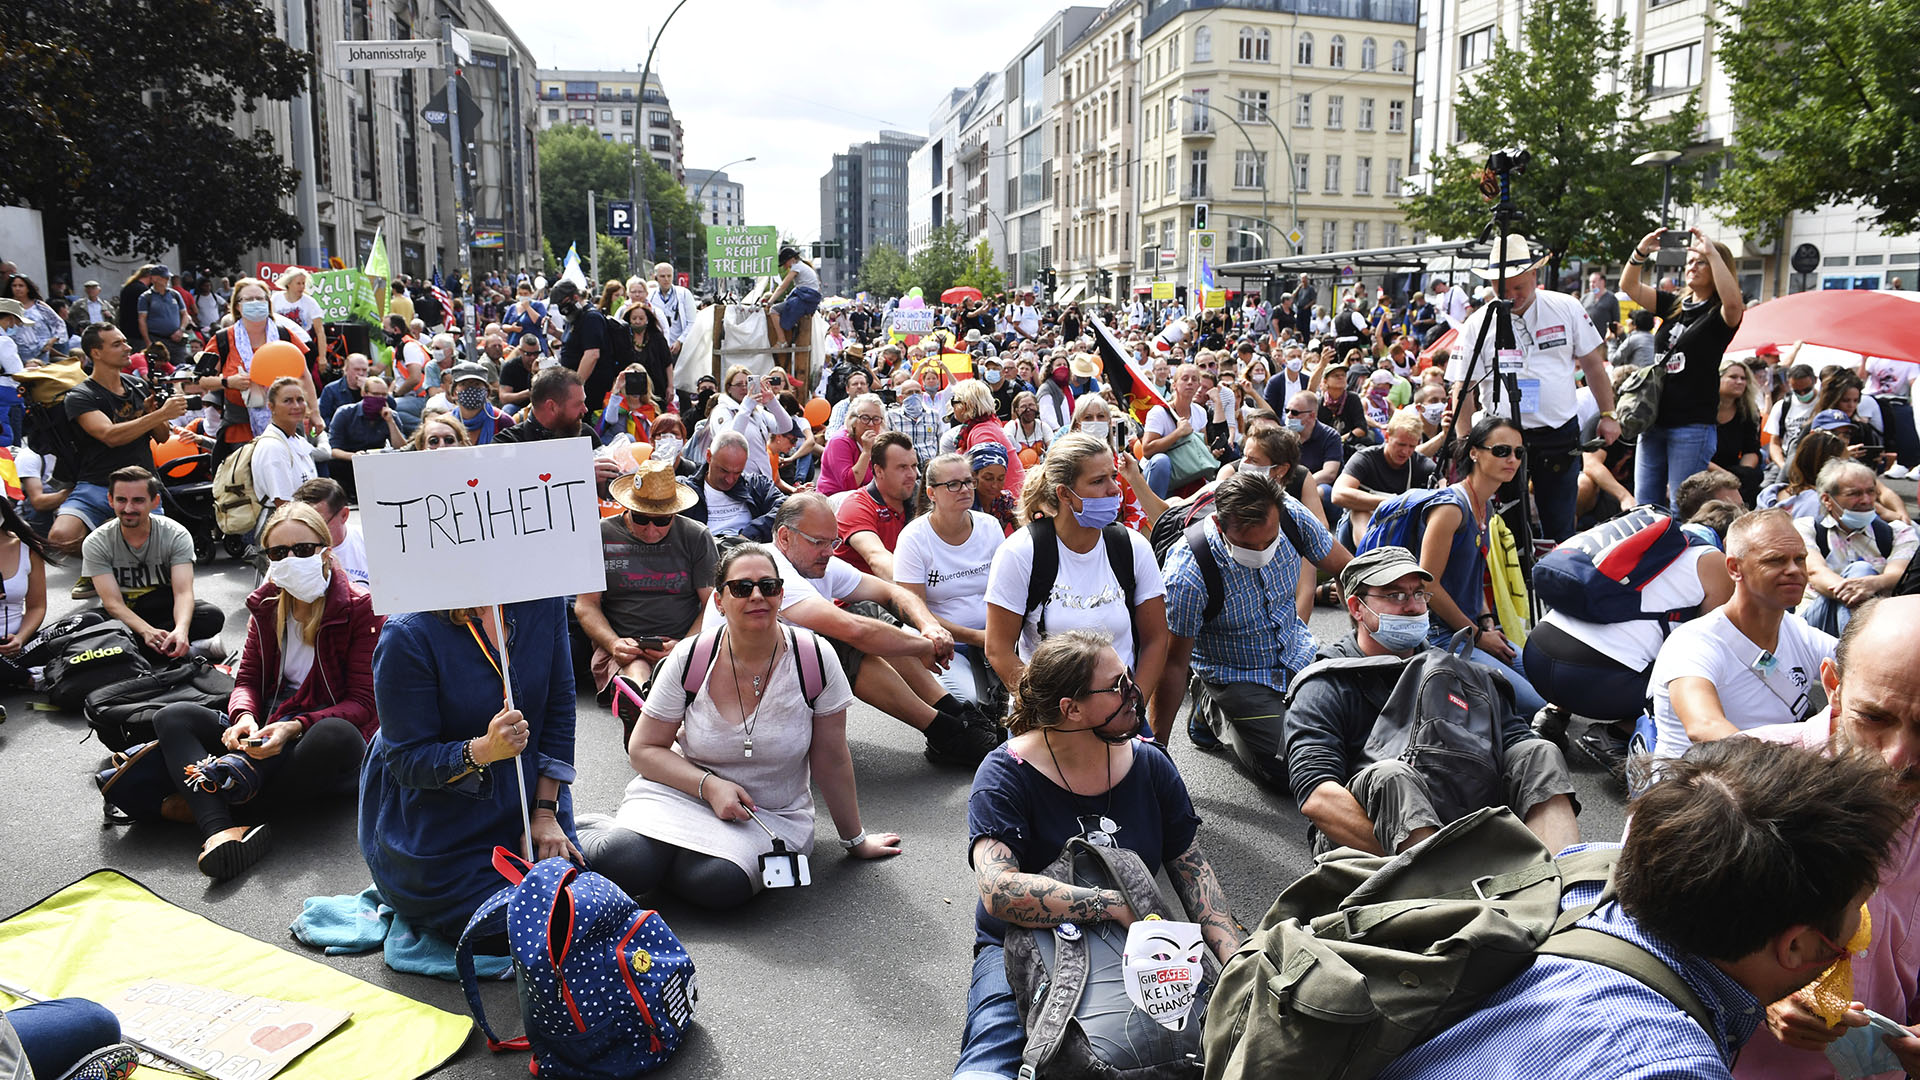 Ya había habido protestas el viernes (Bernd Von Jutrczenka/dpa via AP)